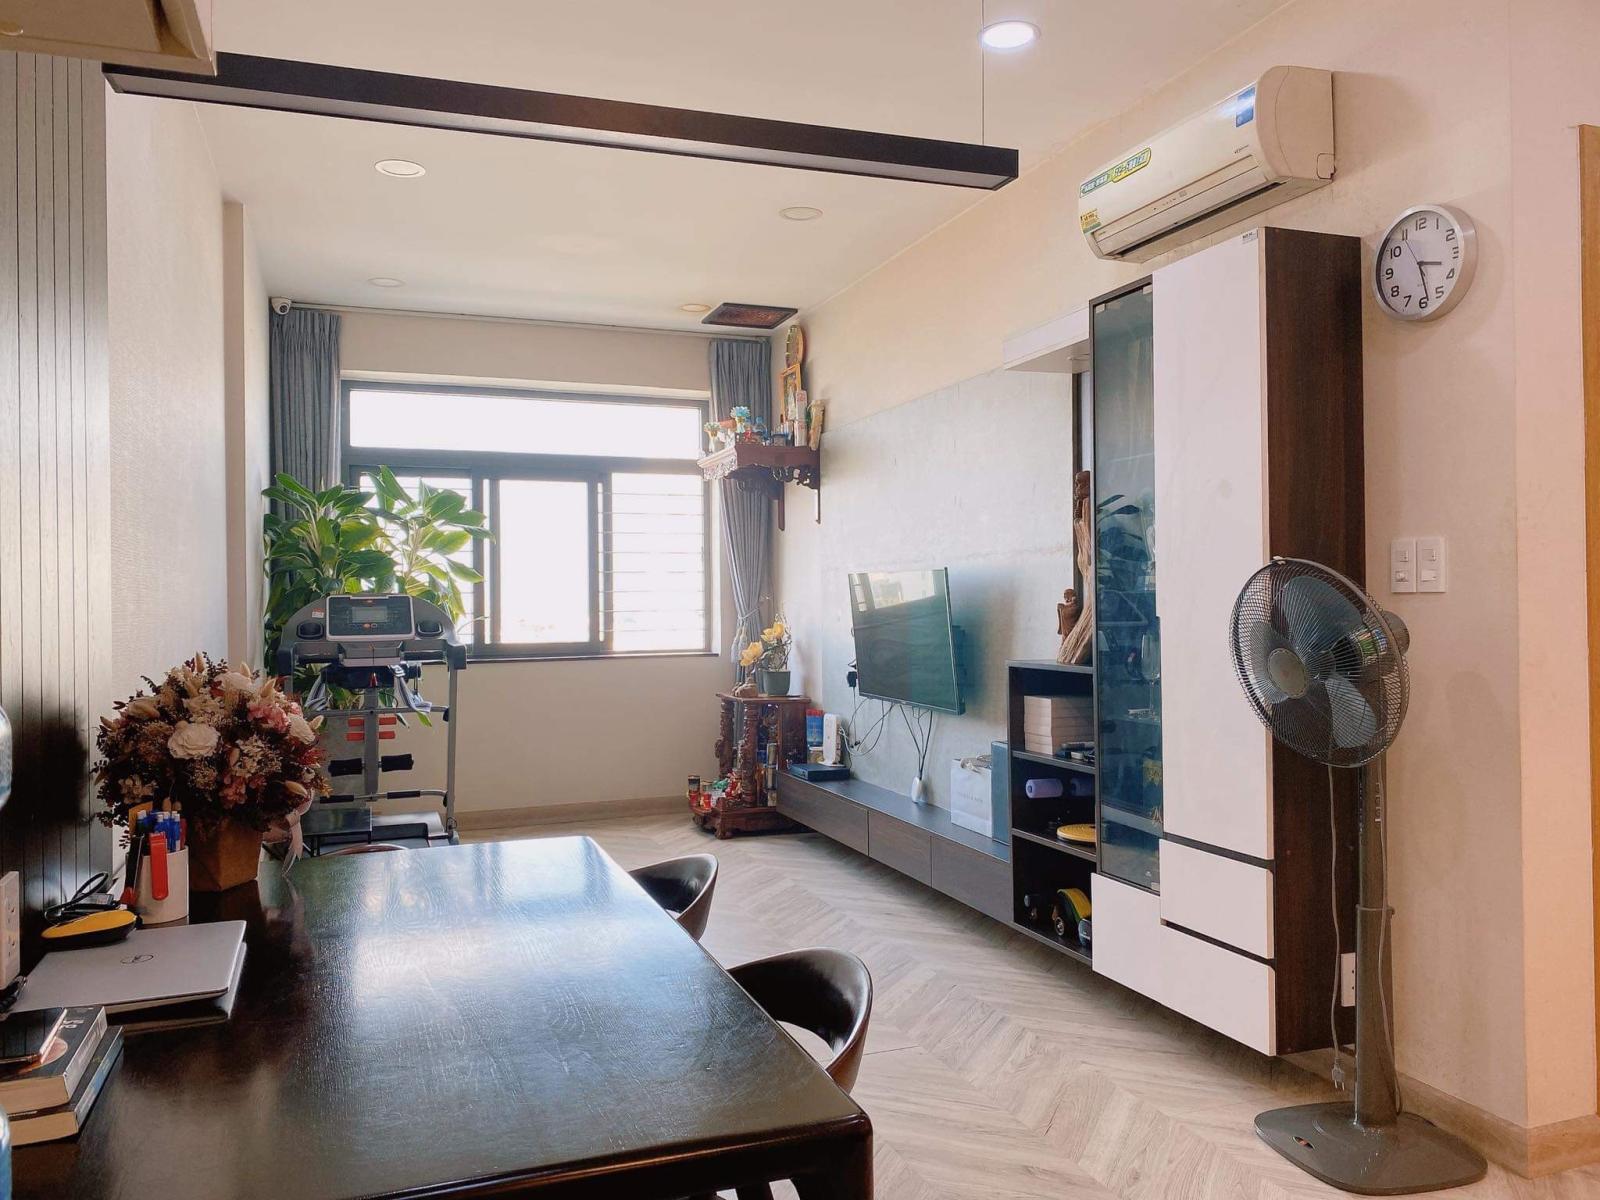 Cho thuê căn hộ Saigon Homes Bình Tân, 70m2 2PN Full nội thất cao cấp LH: 0372972566 